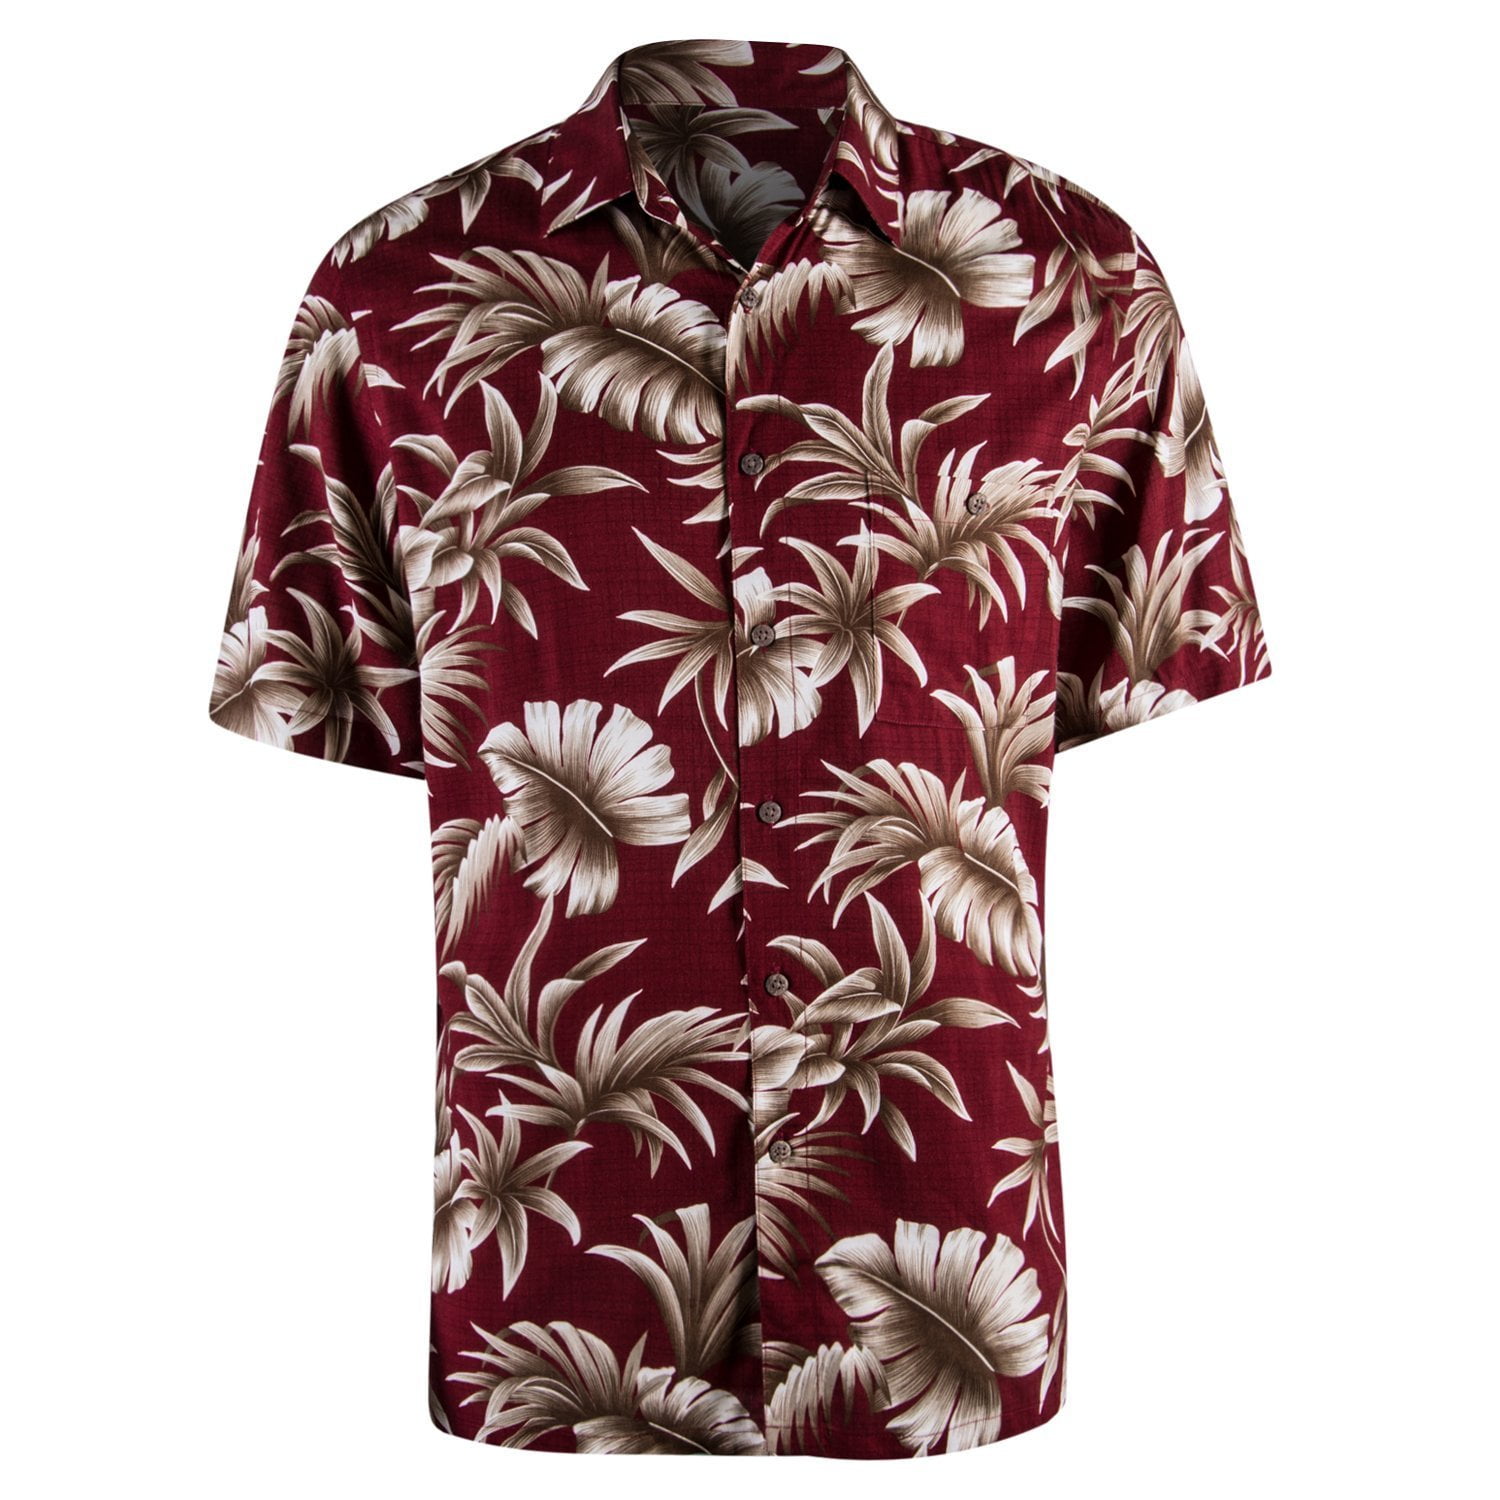 Campia Men's Rayon Print Shirt (Red 17, L) - Walmart.com